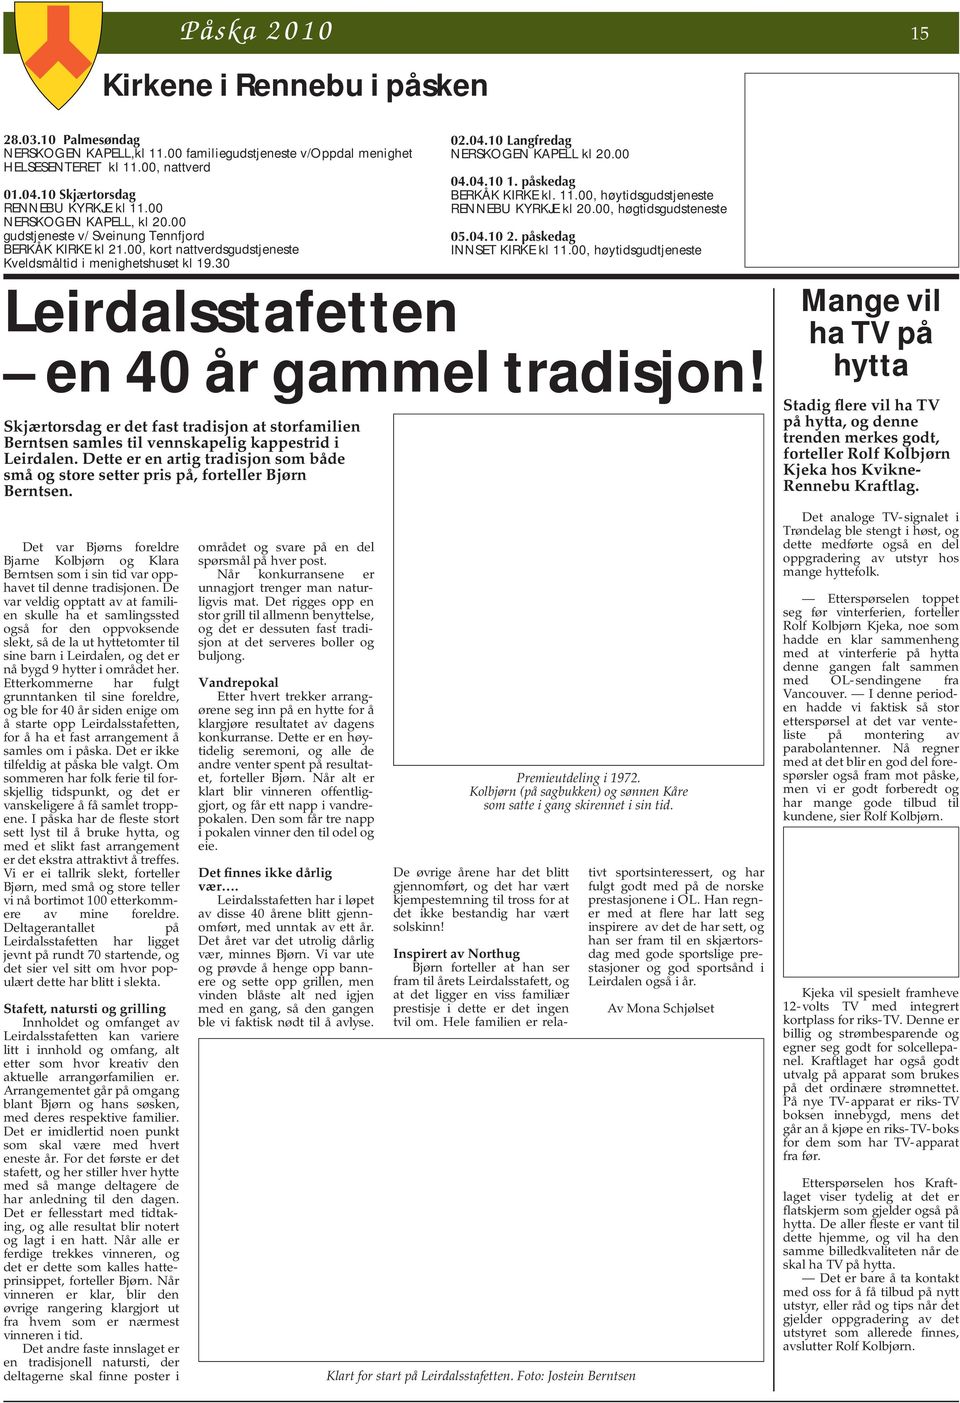 30 Leirdalsstafetten en 40 år gammel tradisjon! Skjærtorsdag er det fast tradisjon at storfamilien Berntsen samles til vennskapelig kappestrid i Leirdalen.